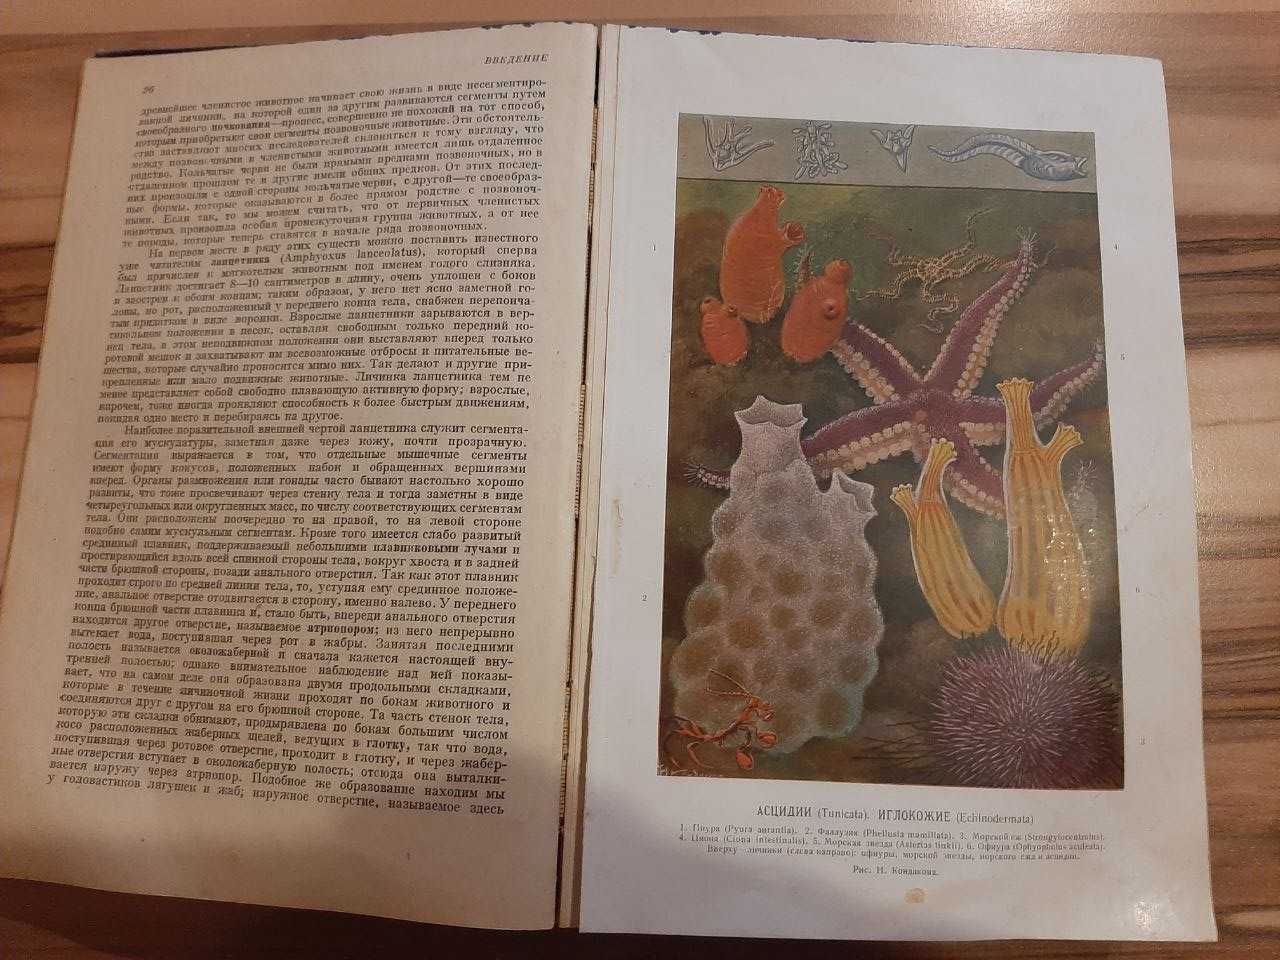 Антикварная Книга "Жизнь животных по А.Э. Брэму", Том I, 1931г.